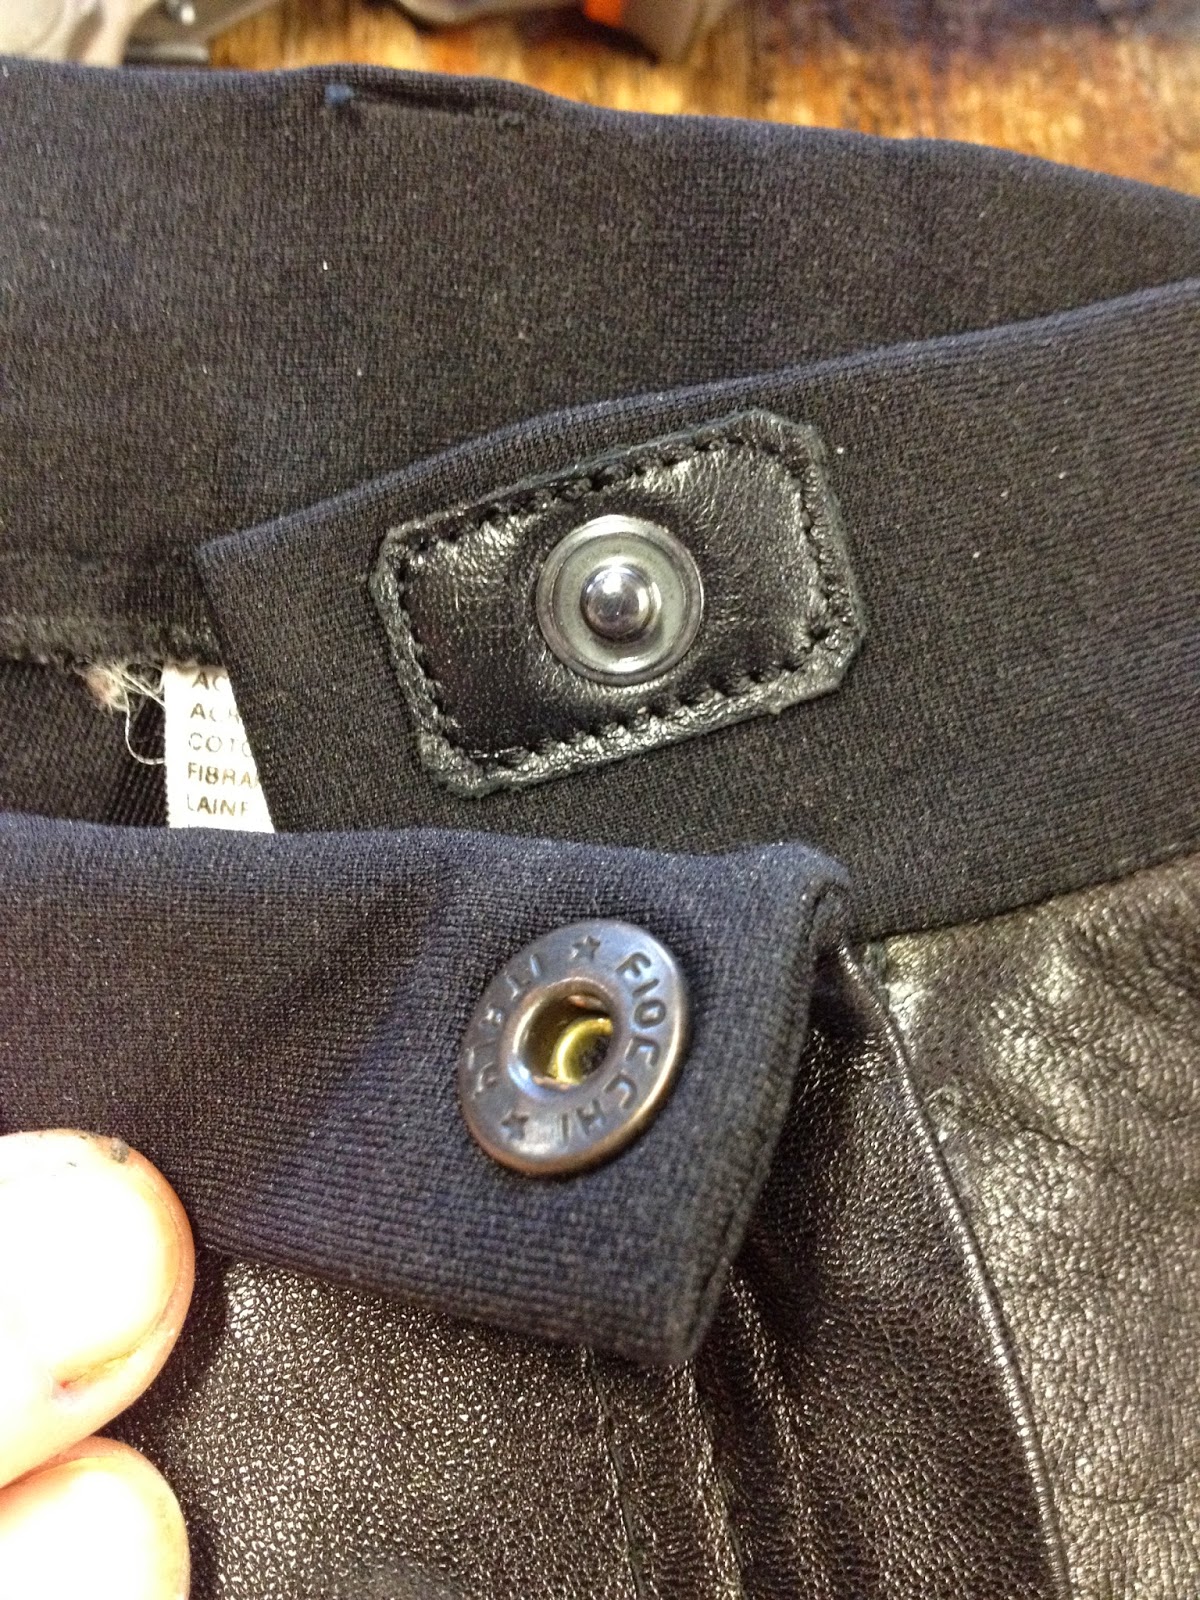 Réparation accro sur veste en cuir